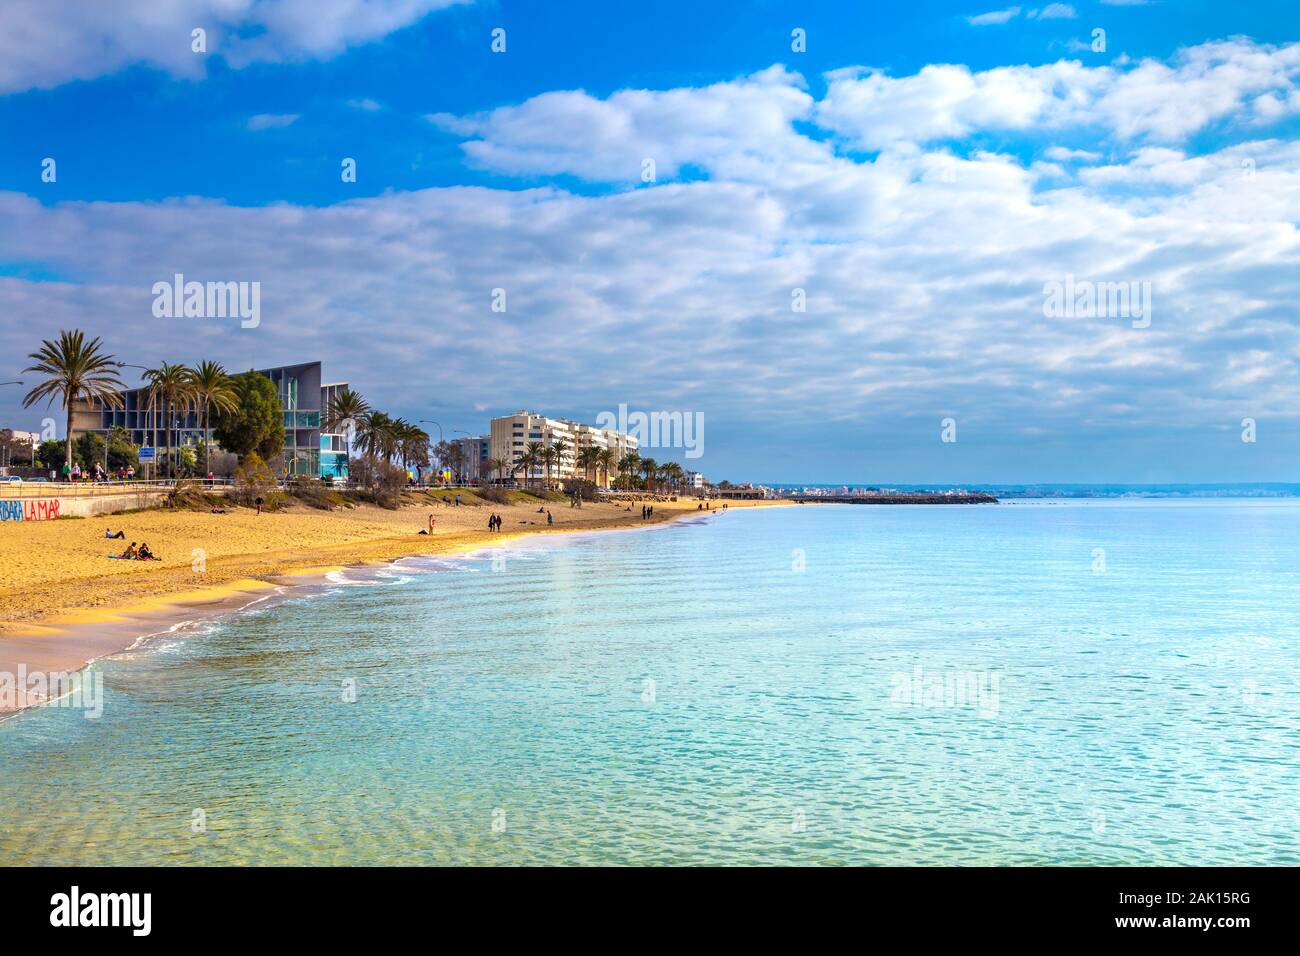 Platja de Can Pere Antoni spiaggia e mare azzurro acqua, Mallorca, Spagna Foto Stock